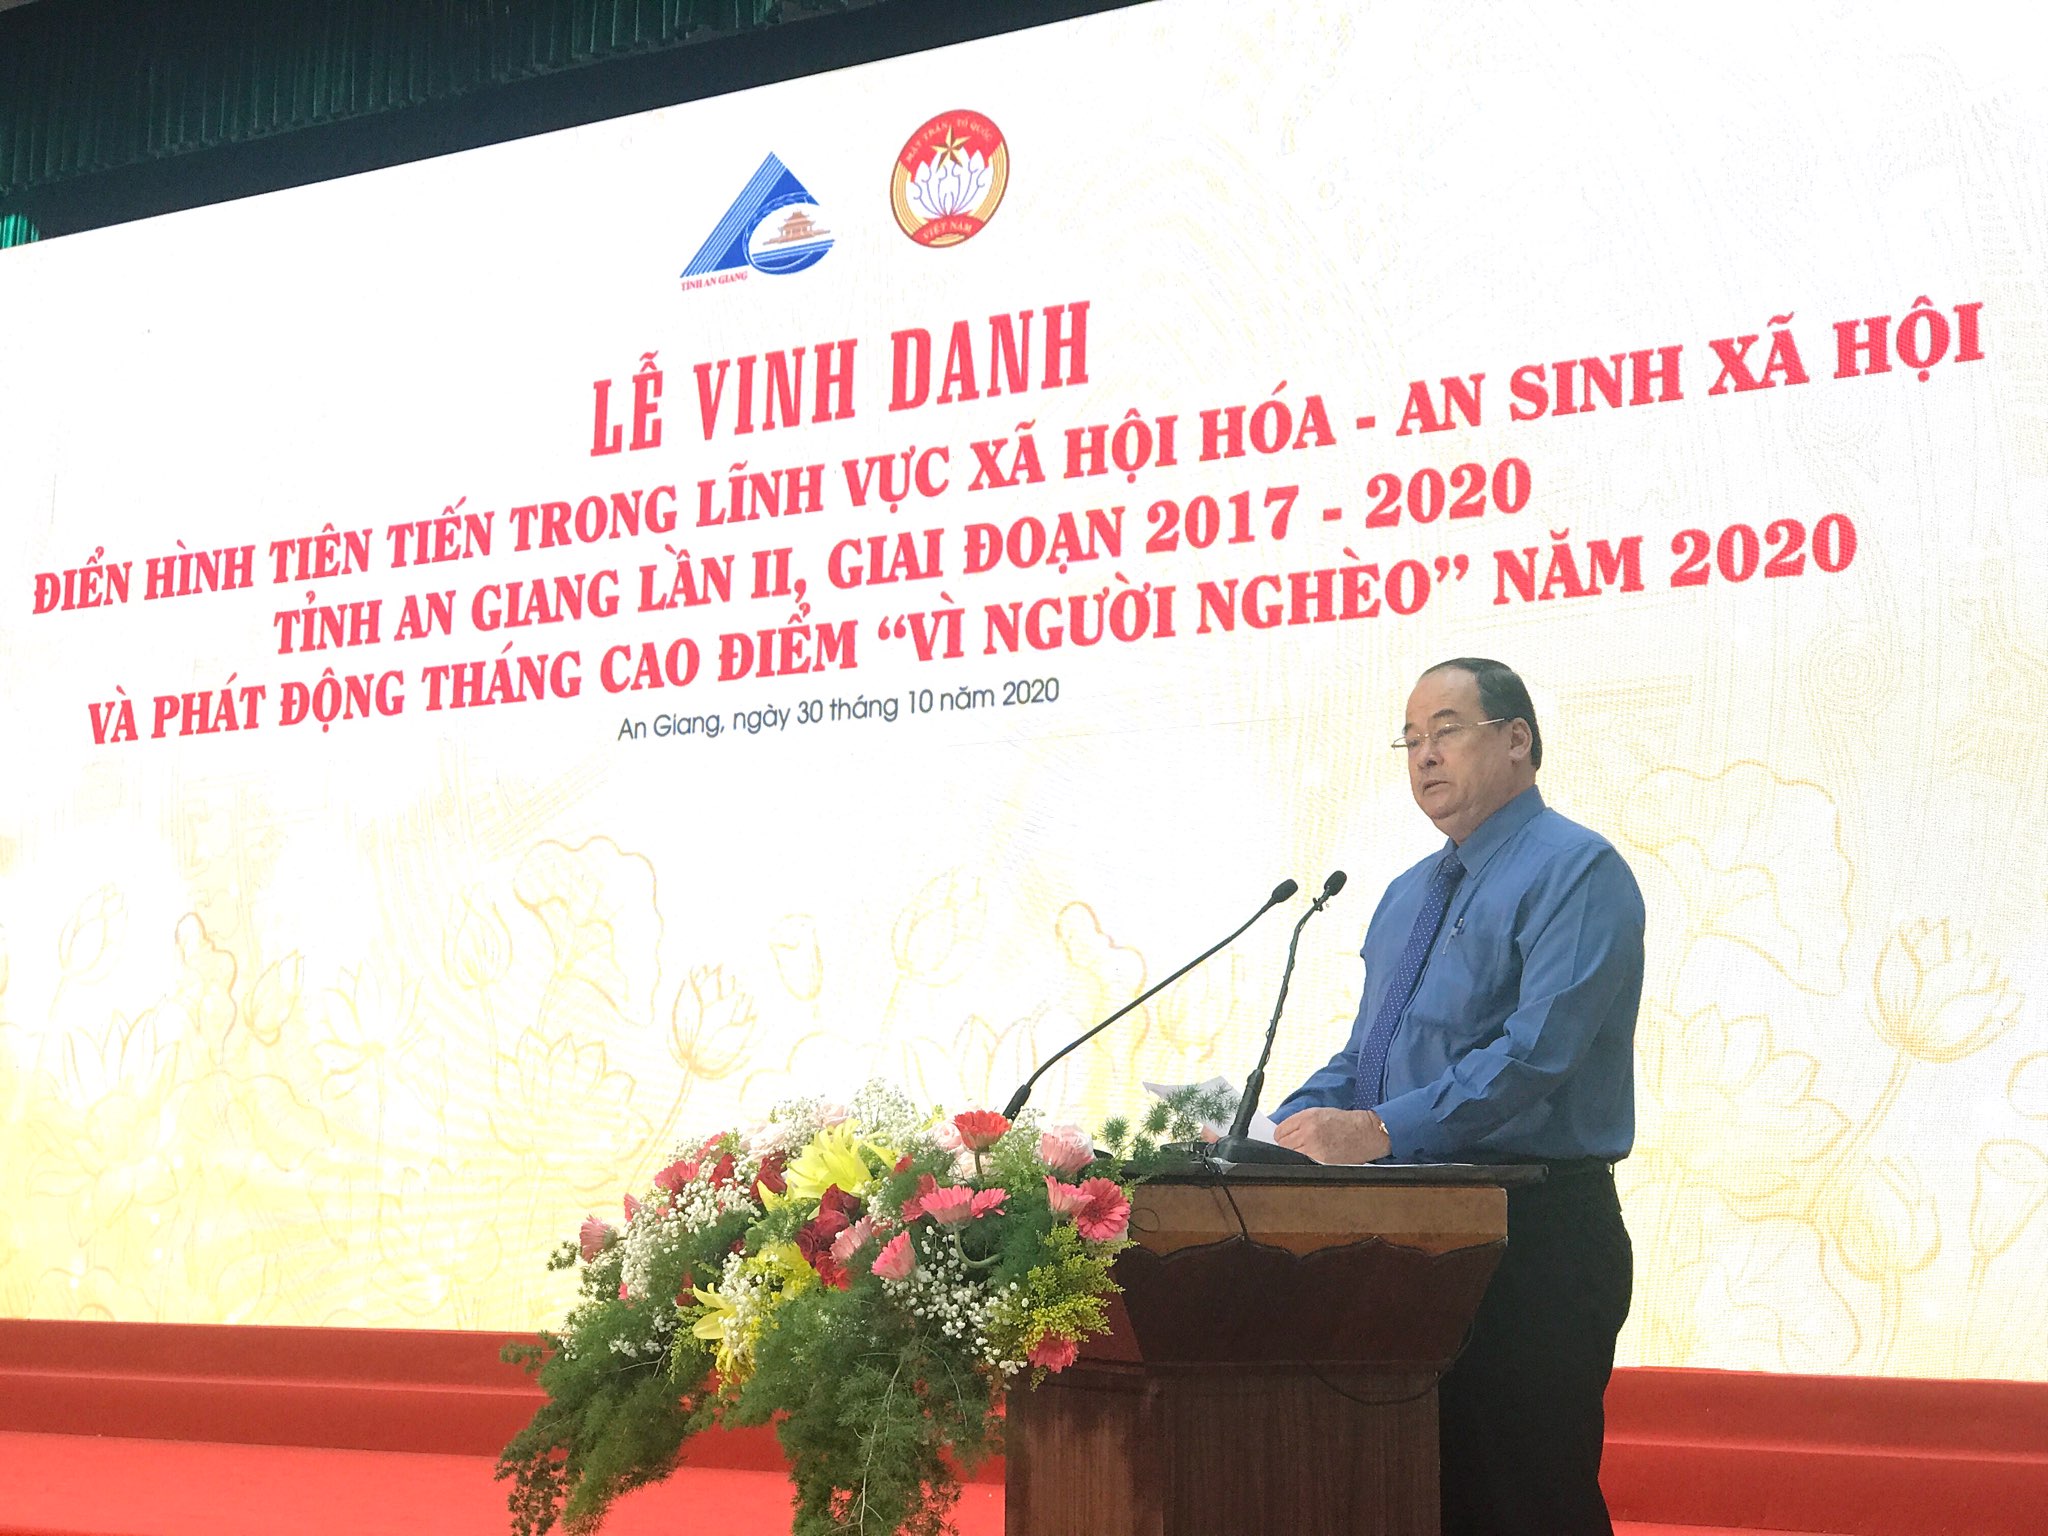 Ông Nguyễn Thanh Bình - Phó Bí thư Tỉnh uỷ, Chủ tịch UBND tỉnh An Giang phát biểu tại buổi lễ.